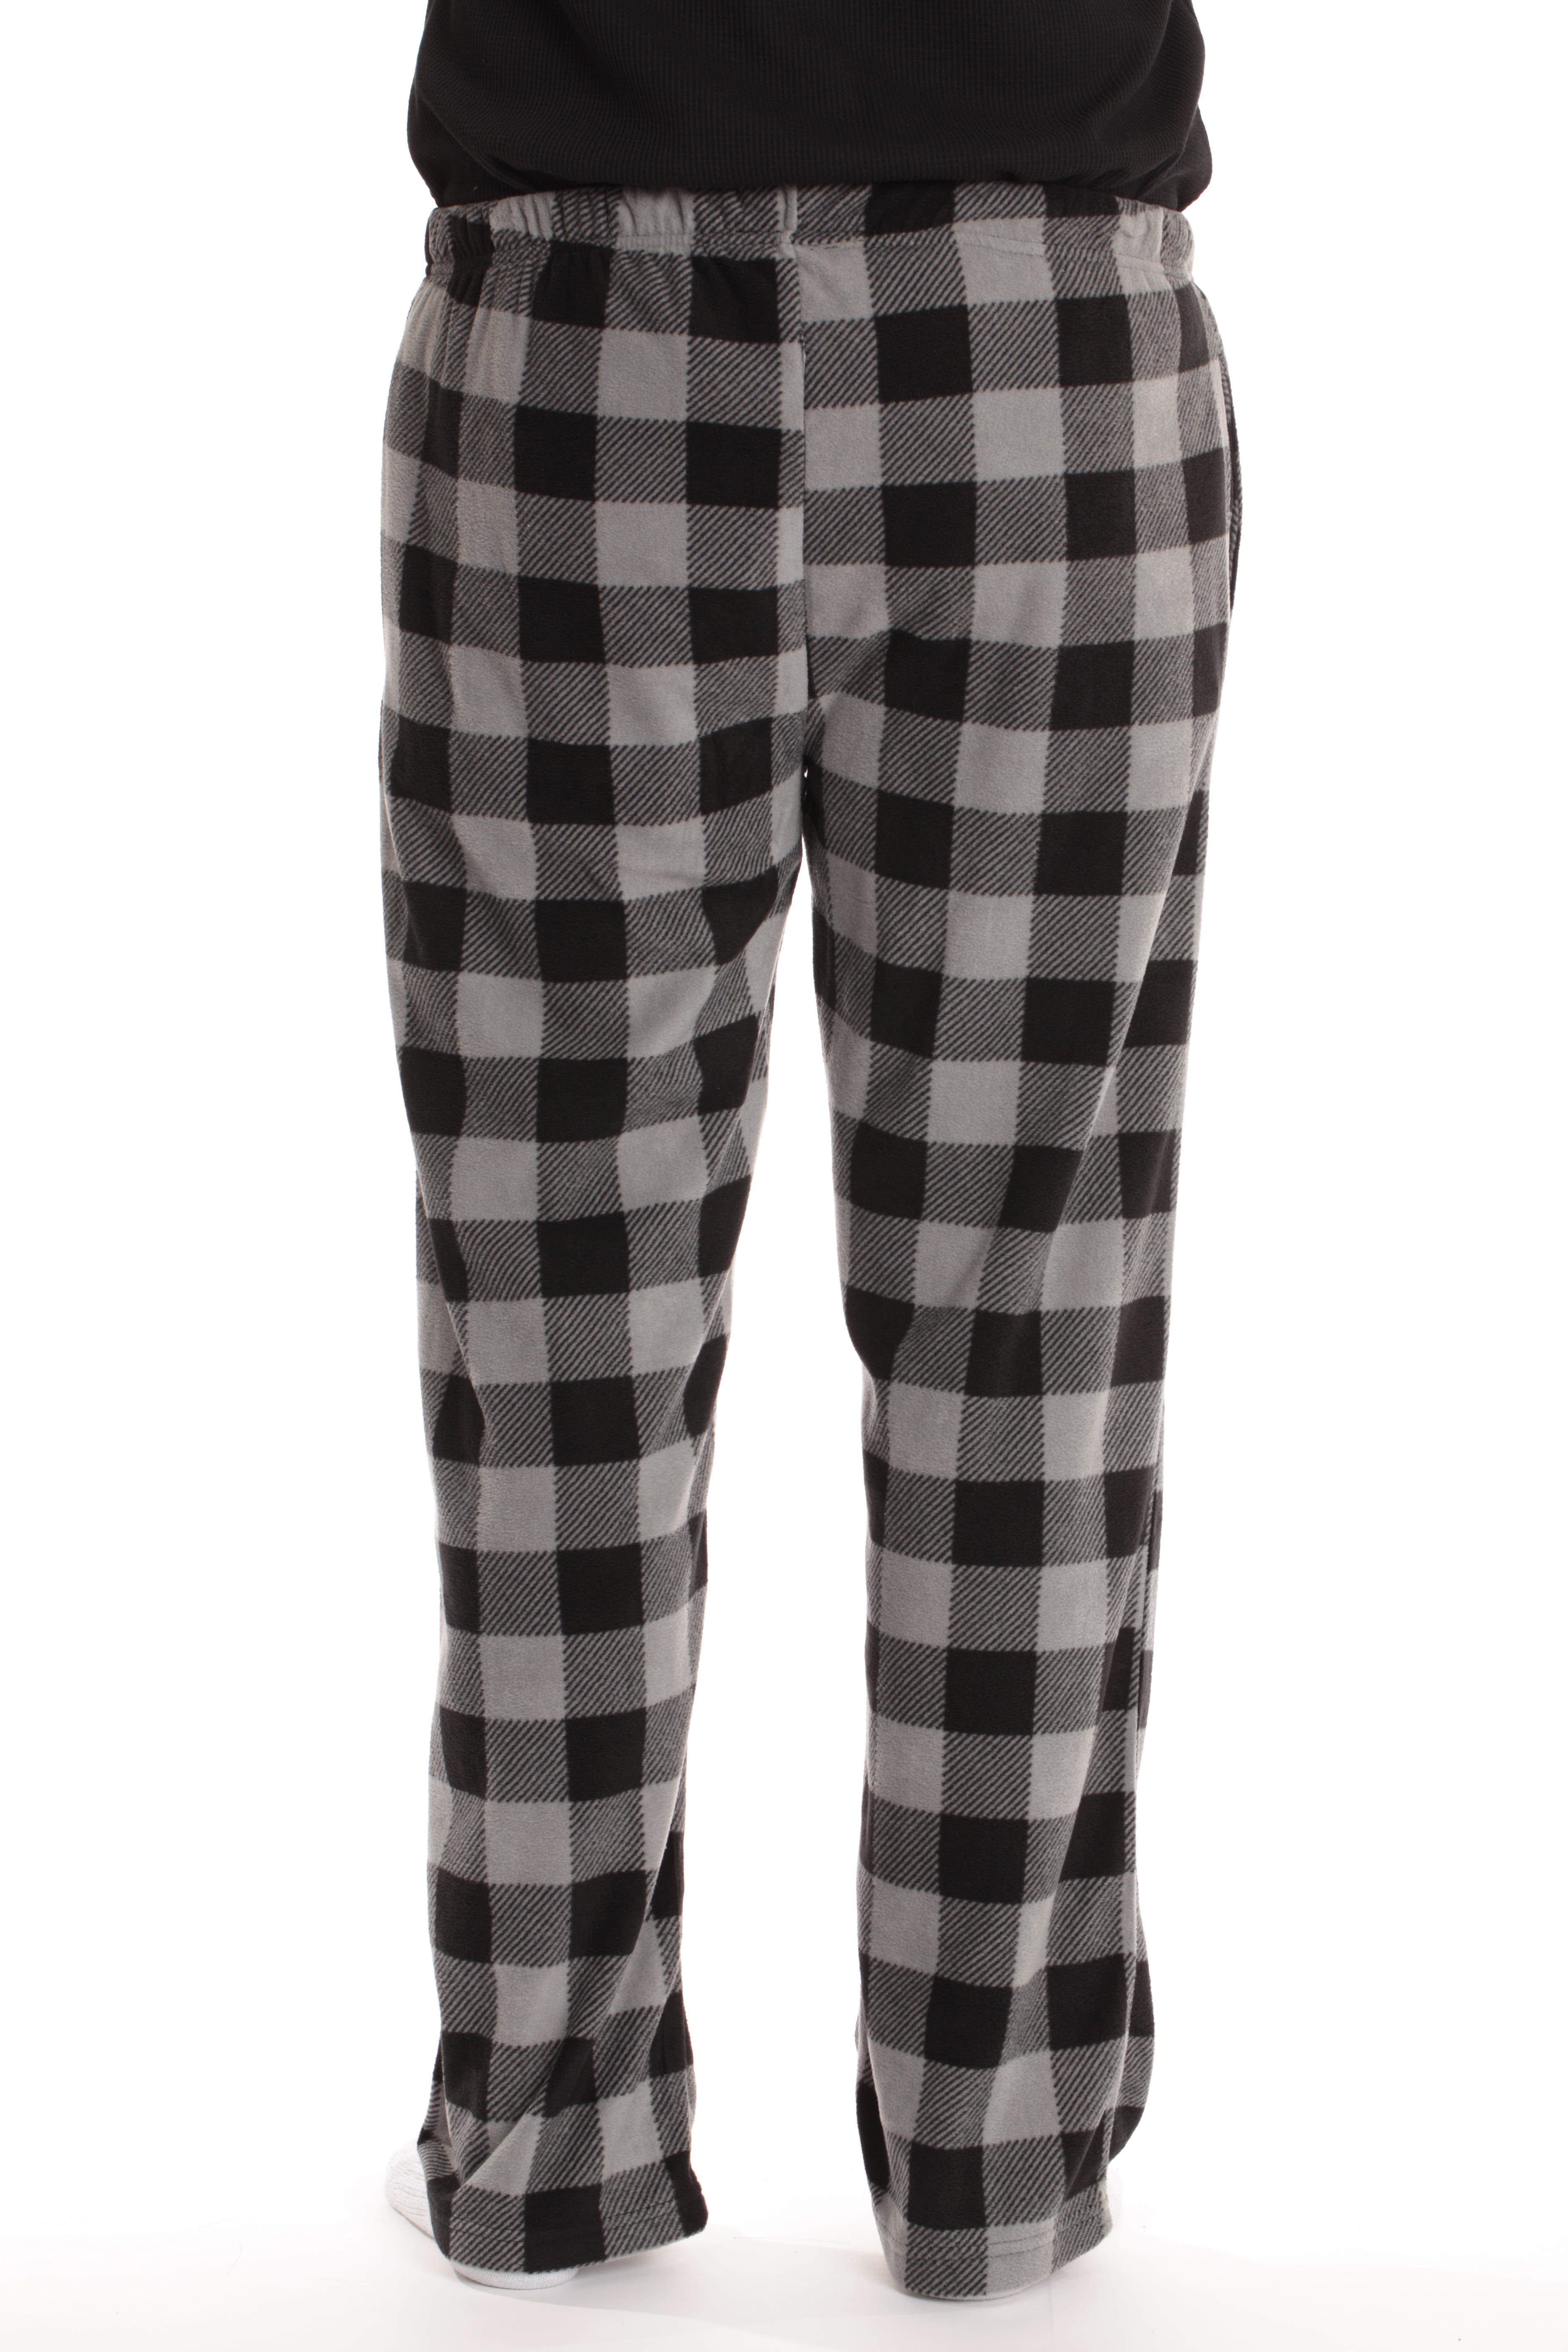 Unisex CHARCOAL BLACK BUFFALO Flannel Cotton Plaid Pants w/ PEC Oval 